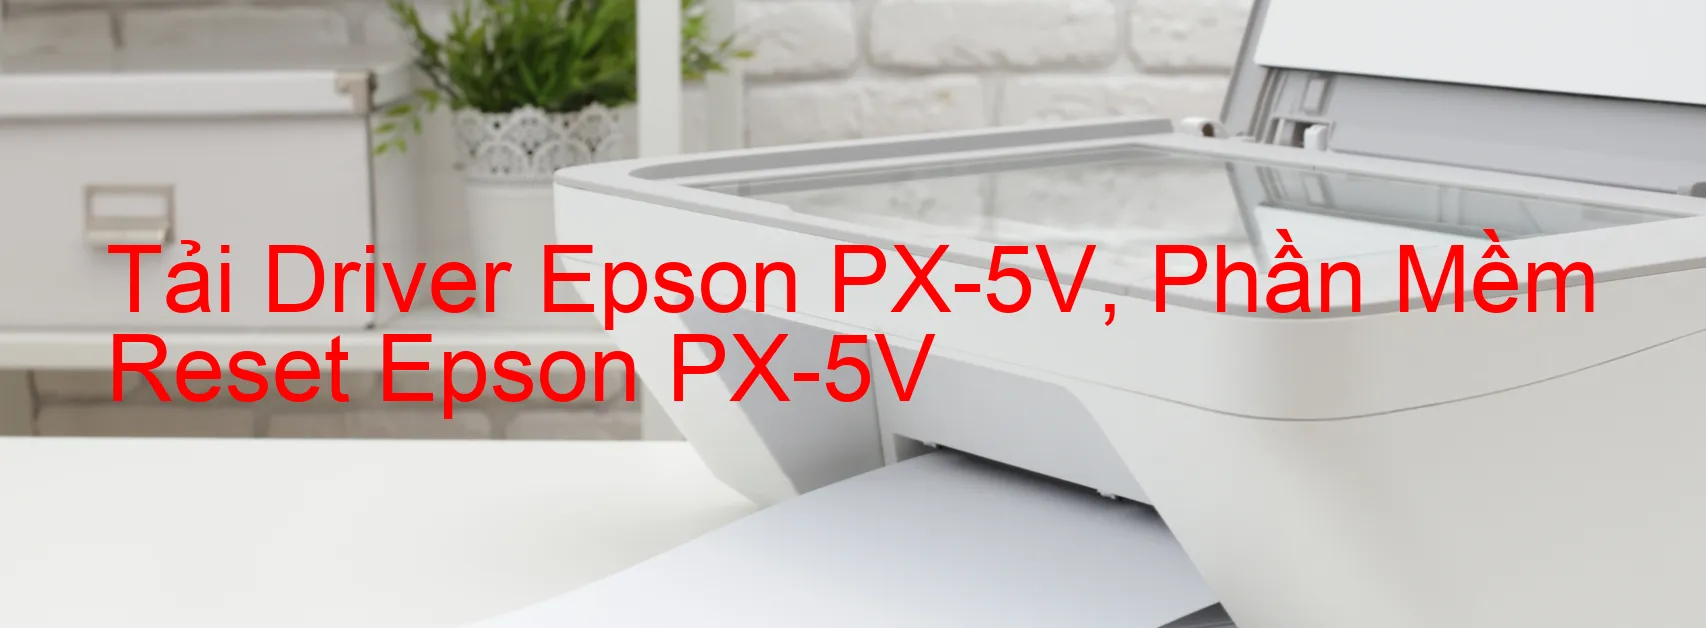 Driver Epson PX-5V, Phần Mềm Reset Epson PX-5V